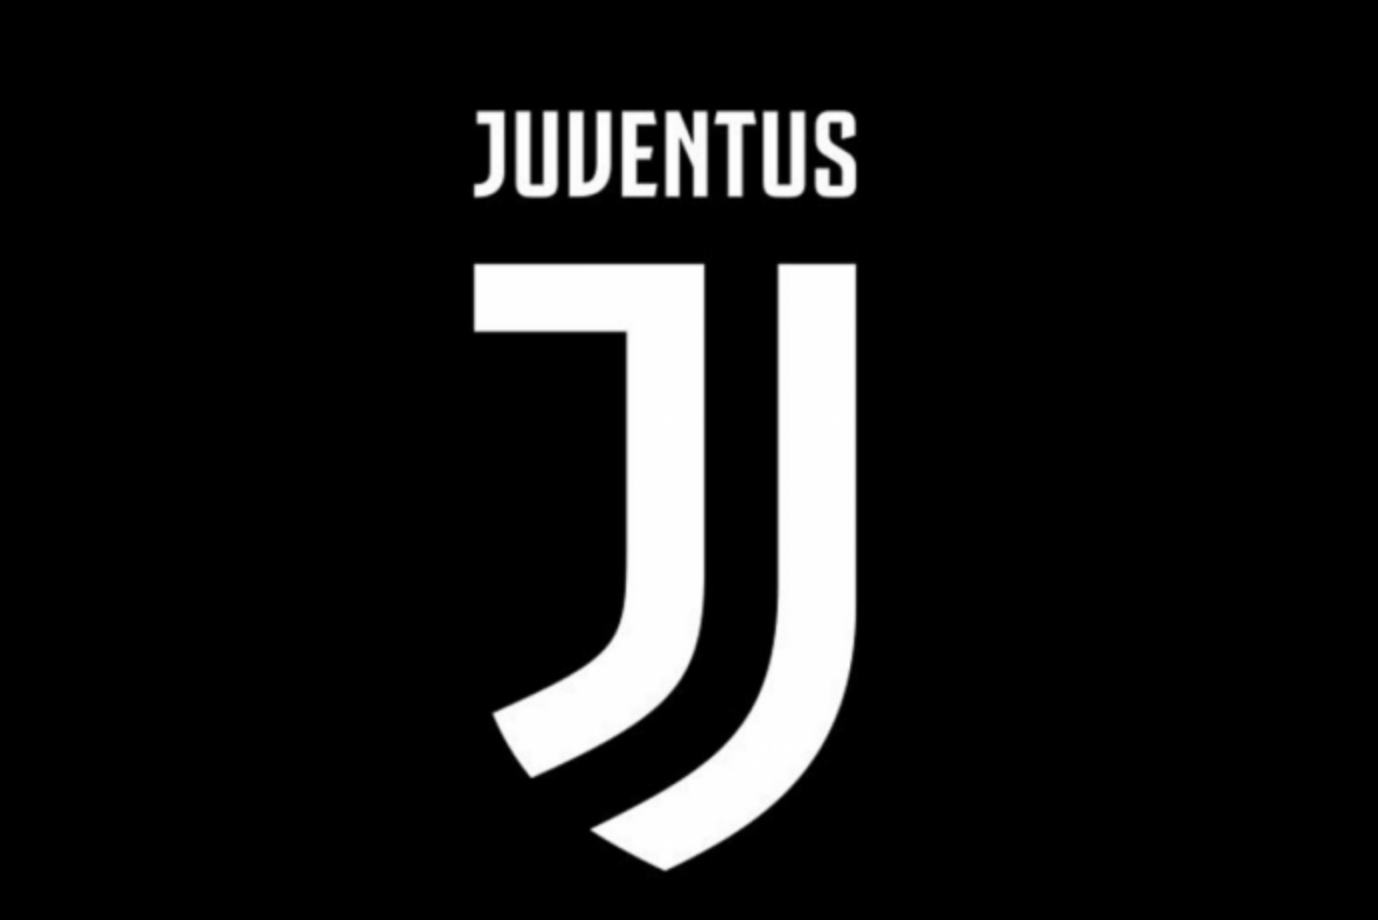 Juventus ein neues Logo, vereinfacht, klar aber auch hier sind die Meinungen geteilt. 